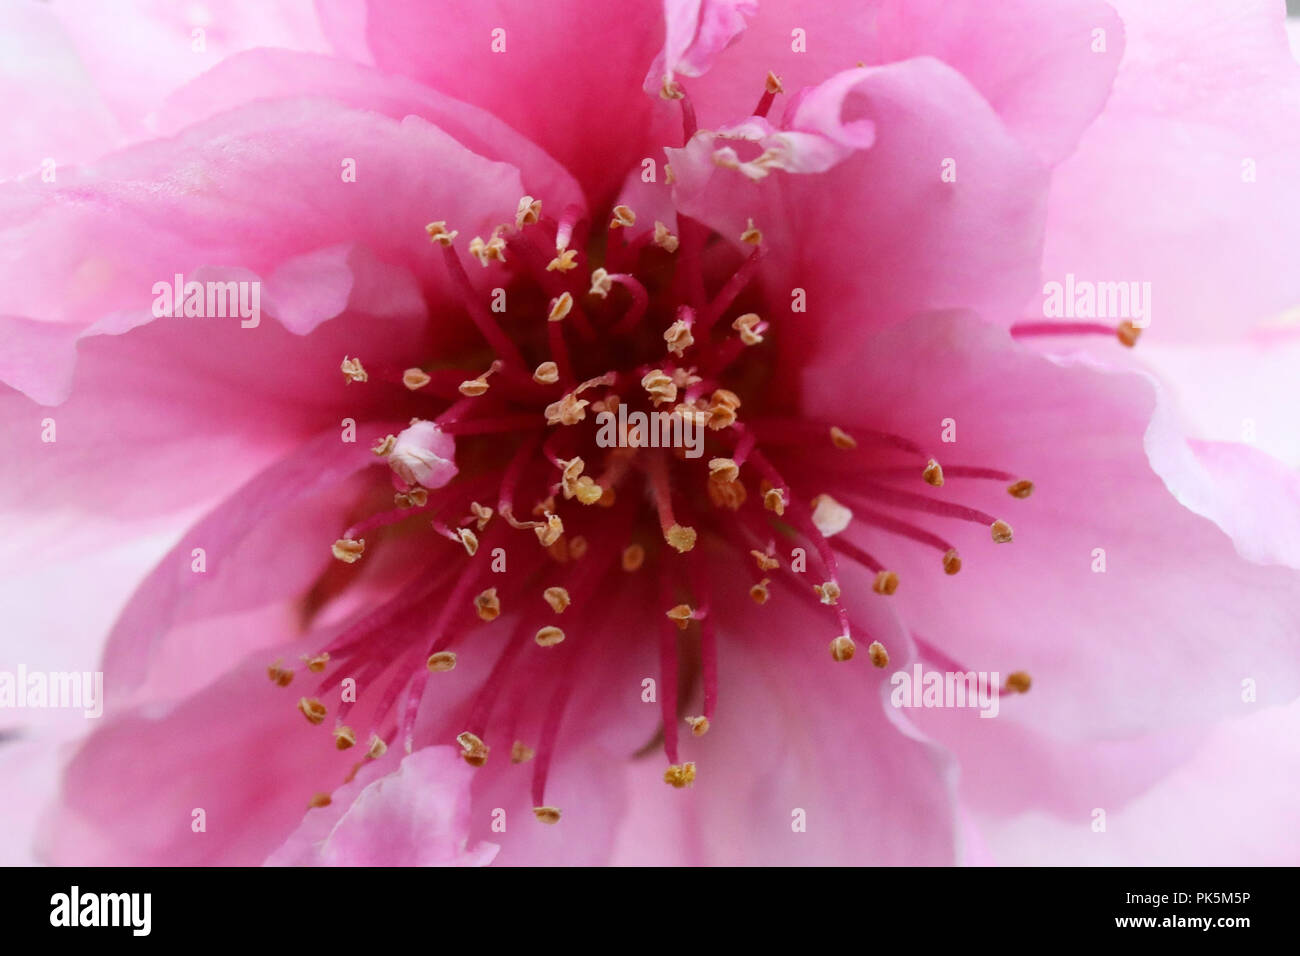 Makro Nahaufnahme innen eine neue Jahreszeit Frühling Peach Blossom. Schönen zarten Rosa über ein weiches, blütenförmiges und Blume. Wechsel der Jahreszeit, Fruchtbarkeit Jahreszeiten Konzept wi Stockfoto